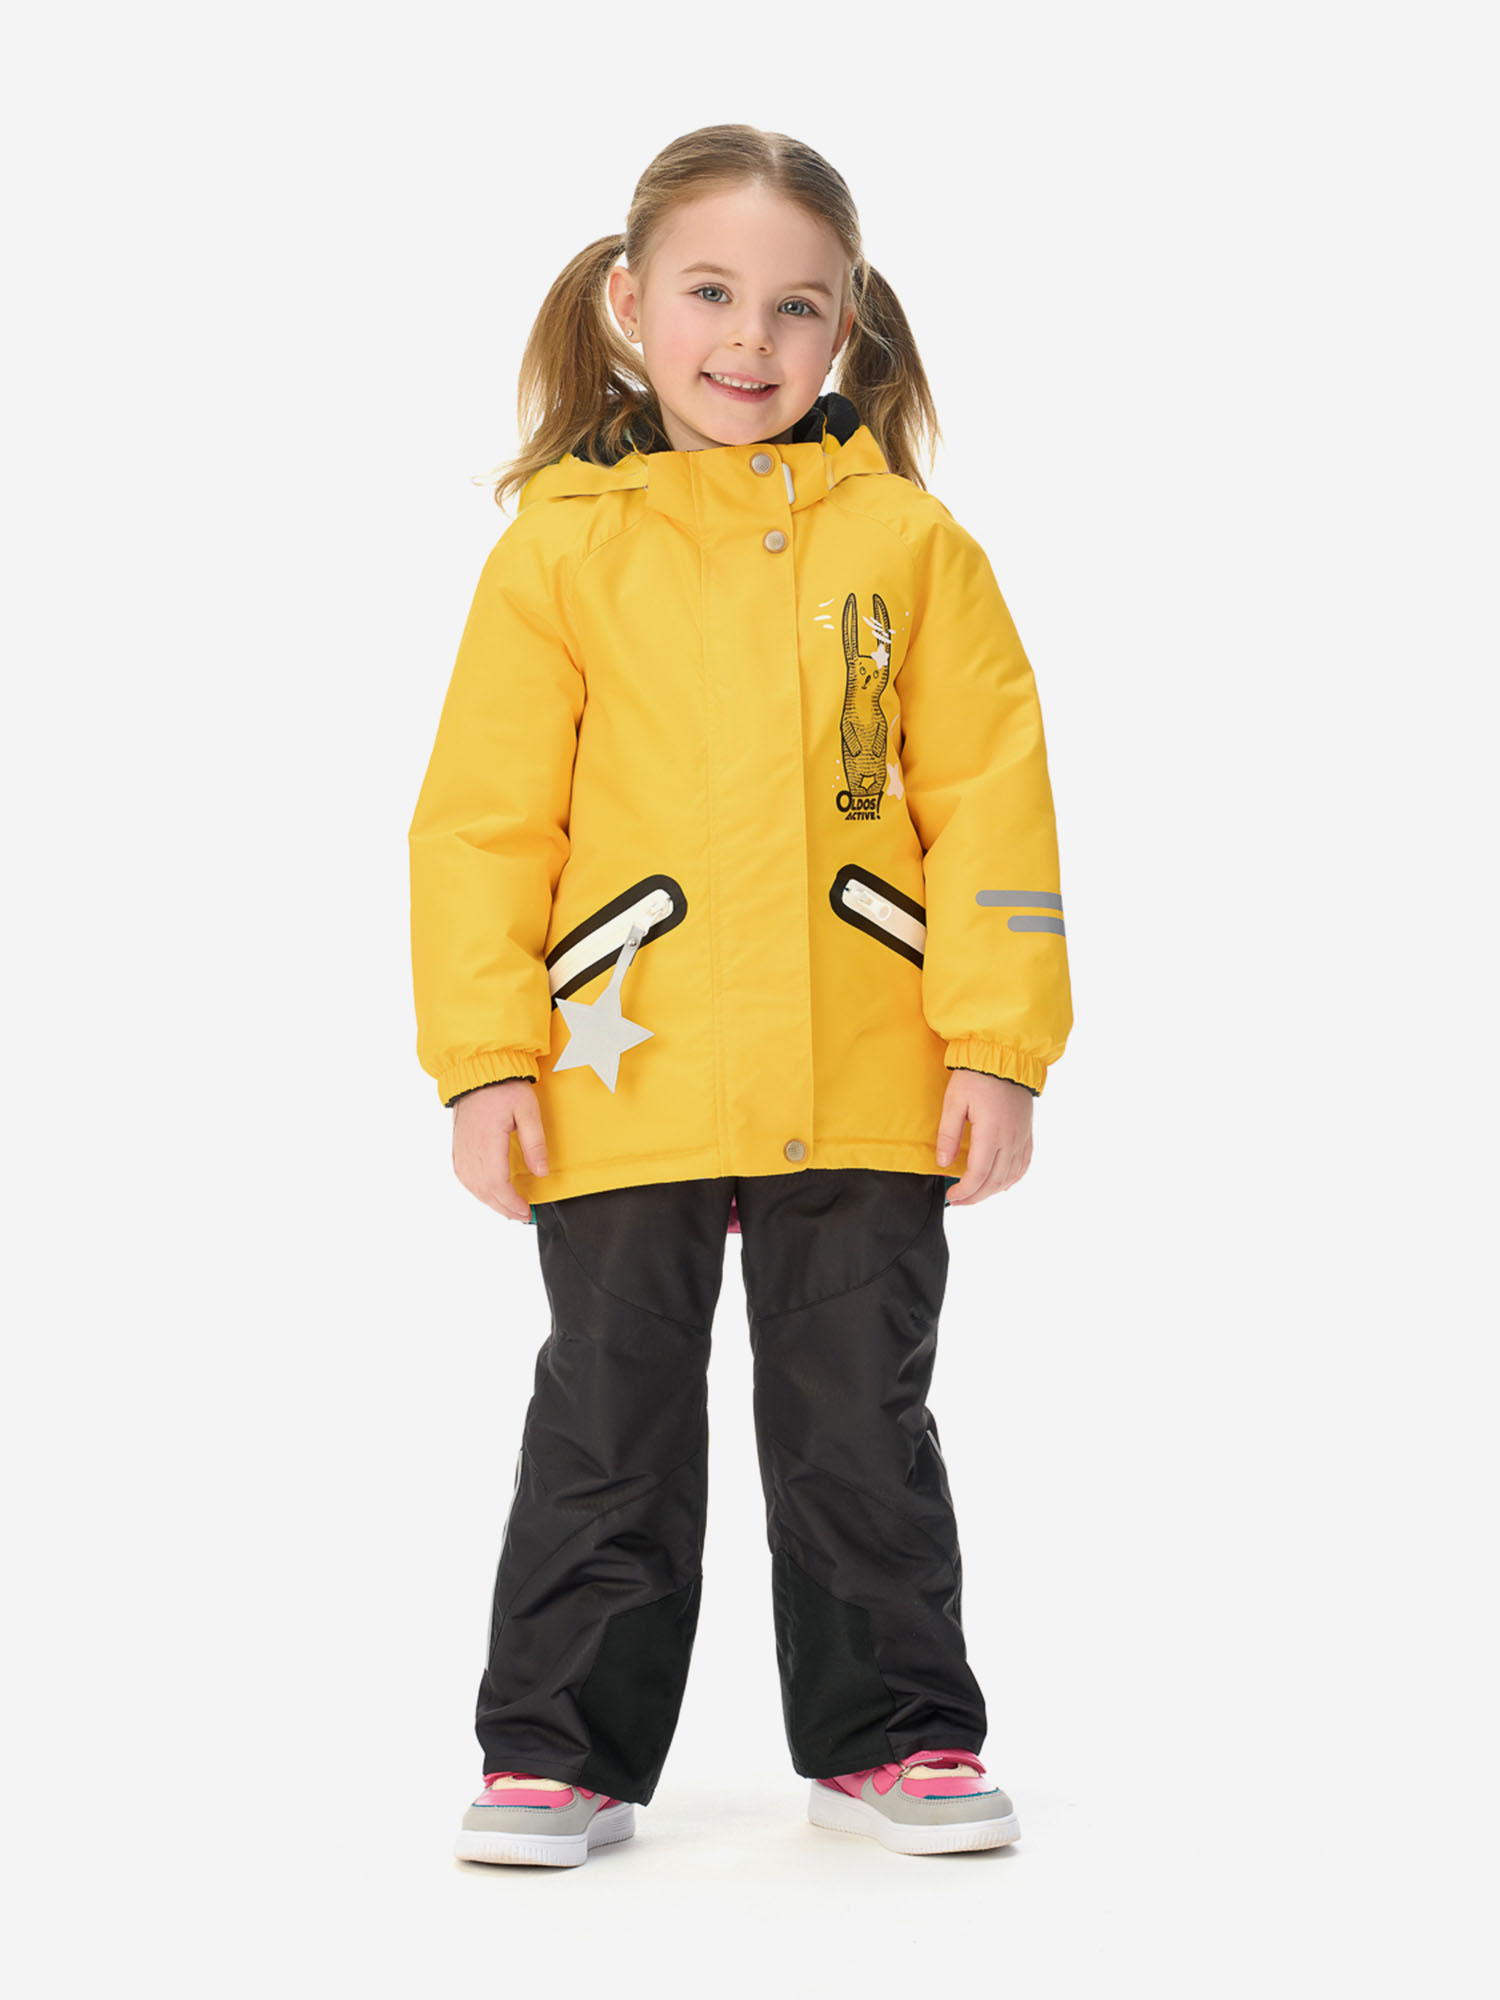 Костюм (куртка + брюки) для девочки Oldos, Желтый